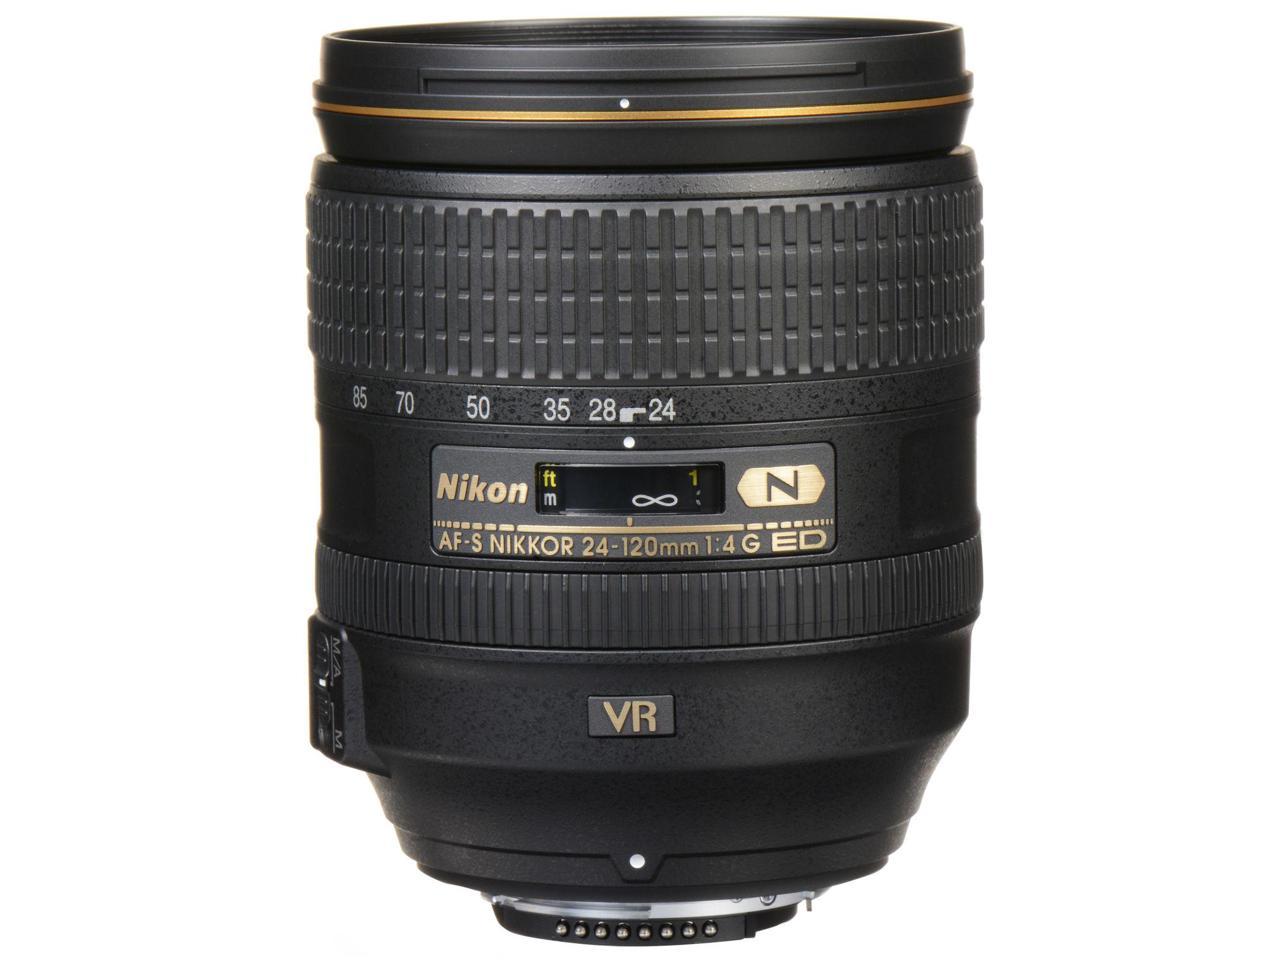 Nikon 28-300mm f/3.5-5.6g ed VR af-s Nikkor. Nikon af-s DX Nikkor 18-300 mm f/3.5-5.6g ed VR. Nikon 18-300mm f/3.5-5.6g ed af-s VR DX. Nikon 70-300mm f/4.5-6.3g ed VR af-p DX.